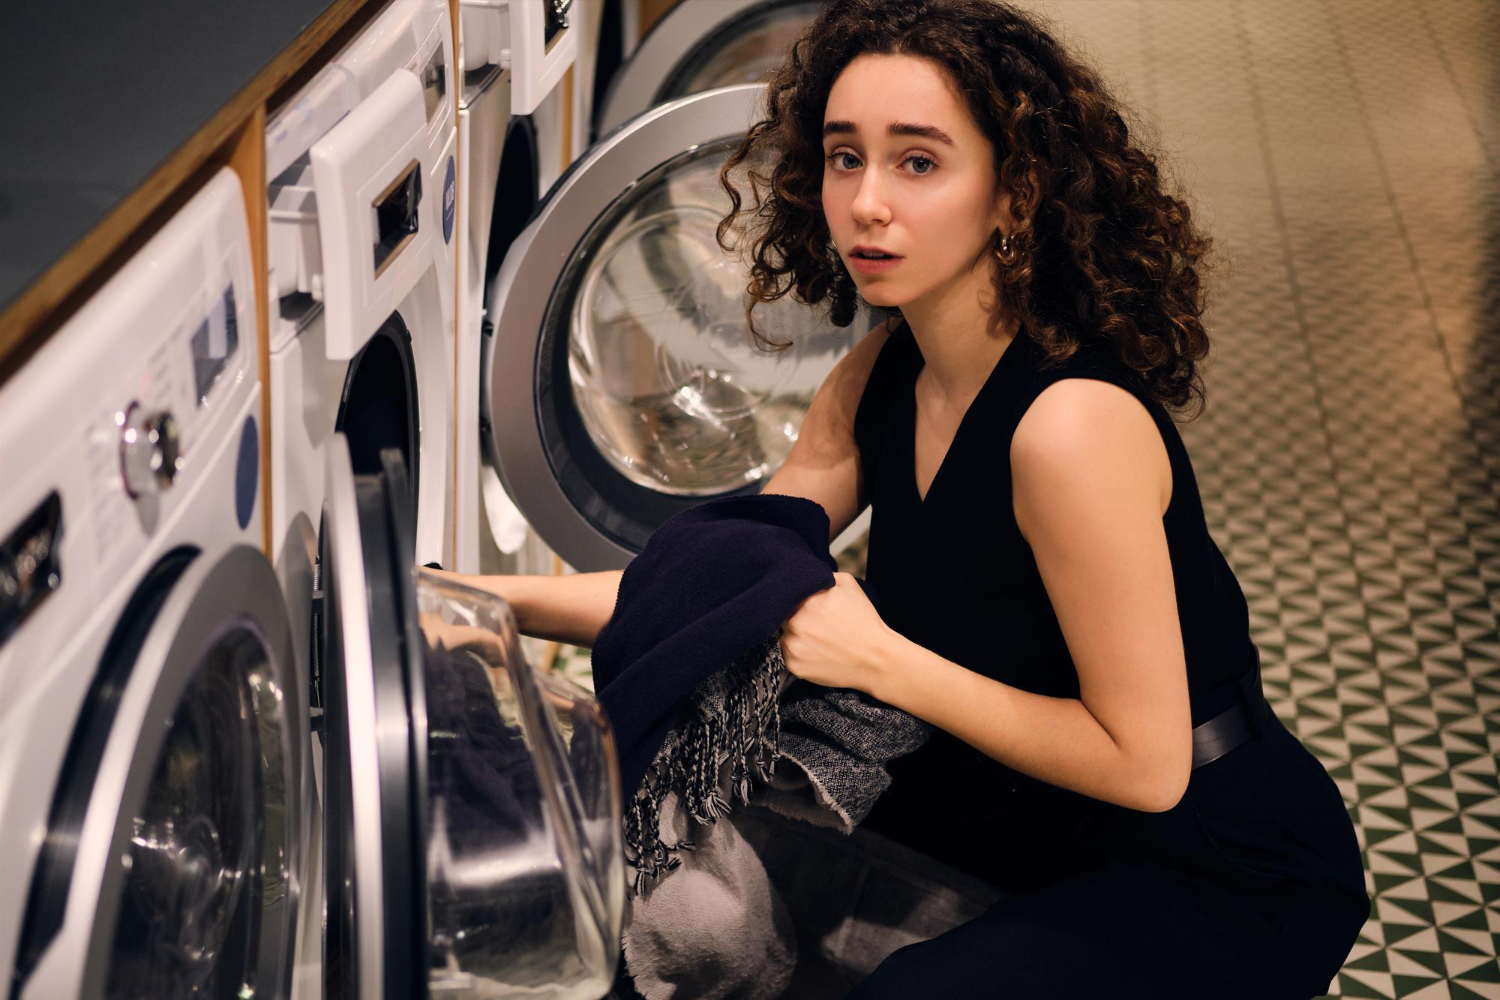 Para que serve cada símbolo da maquina de lavar roupas?